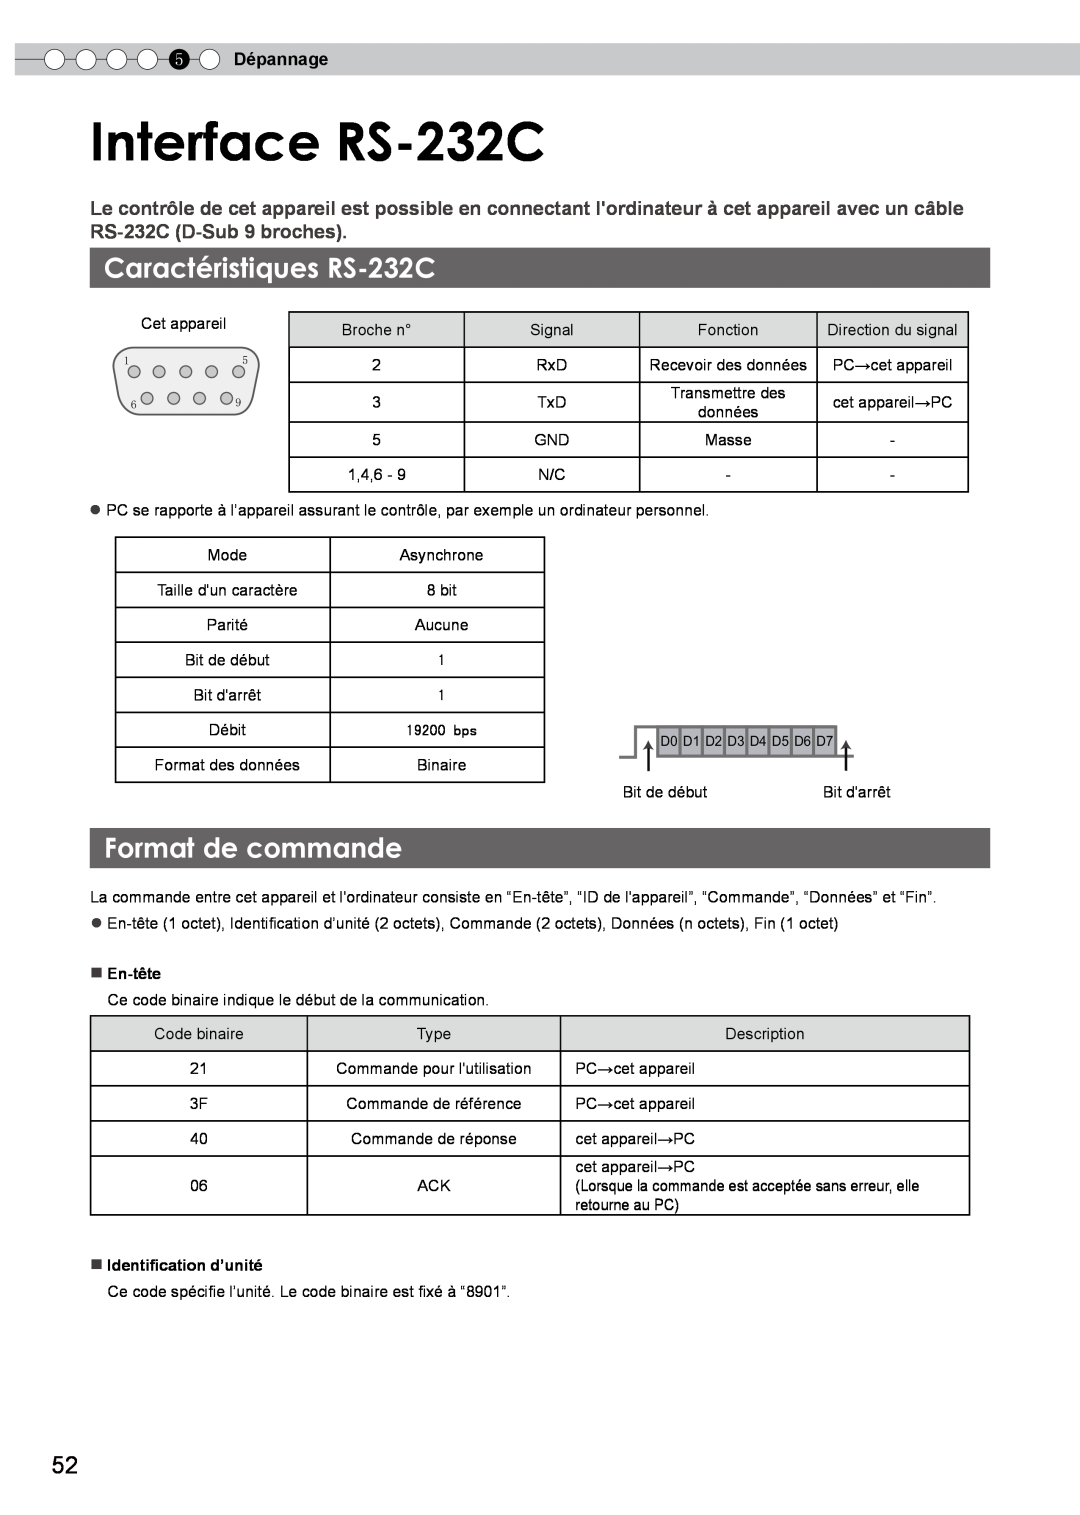 JVC DLA-HD750 manual Interface RS-232C, Caractéristiques RS-232C, Format de commande, 5 Dépannage 